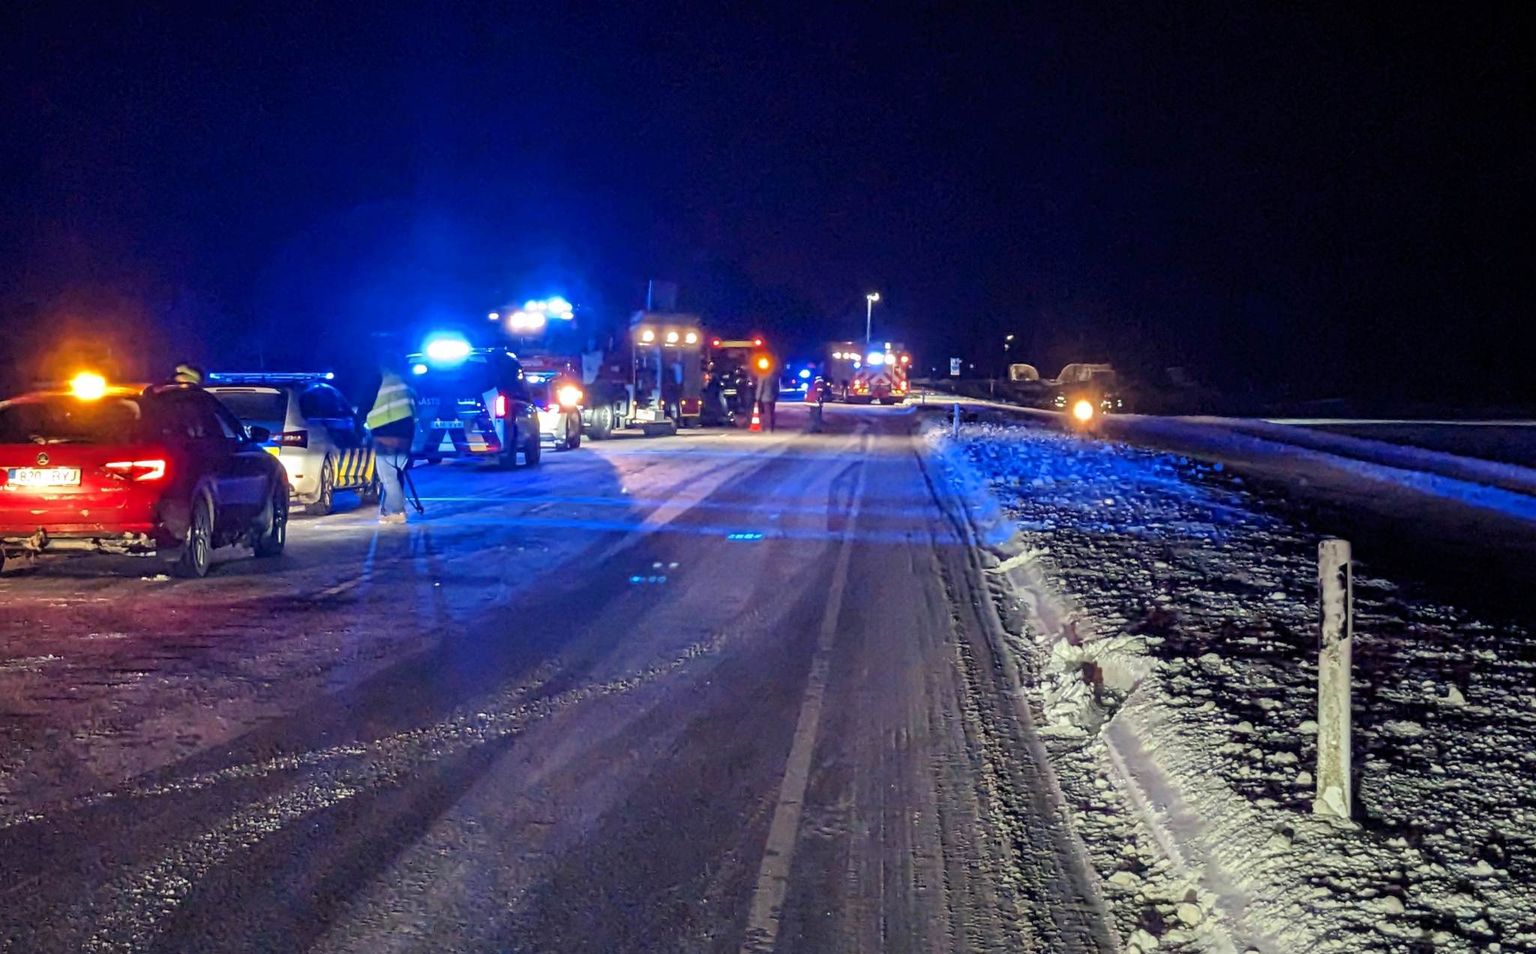 Дорожно-транспортное происшествие с тремя погибшими произошло в четверг вечером на 16-м километре шоссе Йыхви-Тарту недалеко от Атсалама.